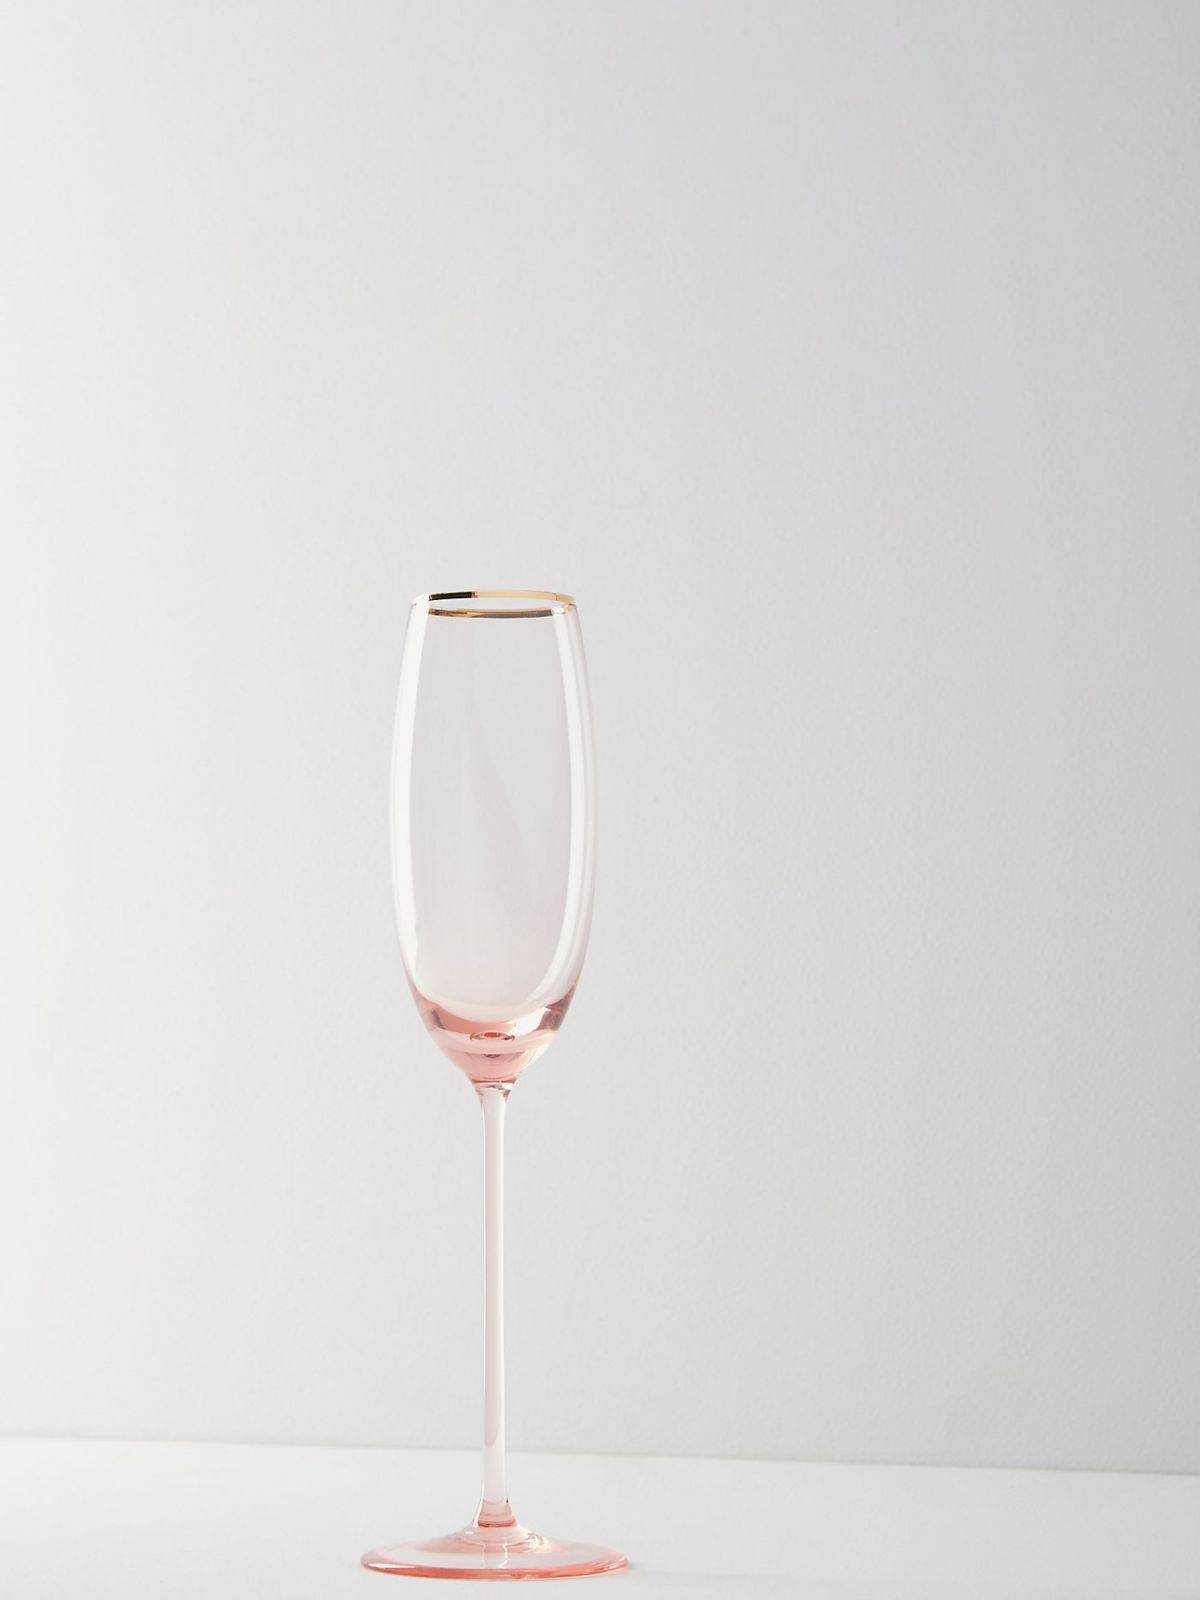  כוס שמפניה עם שפה מוזהבת של ANTHROPOLOGIE